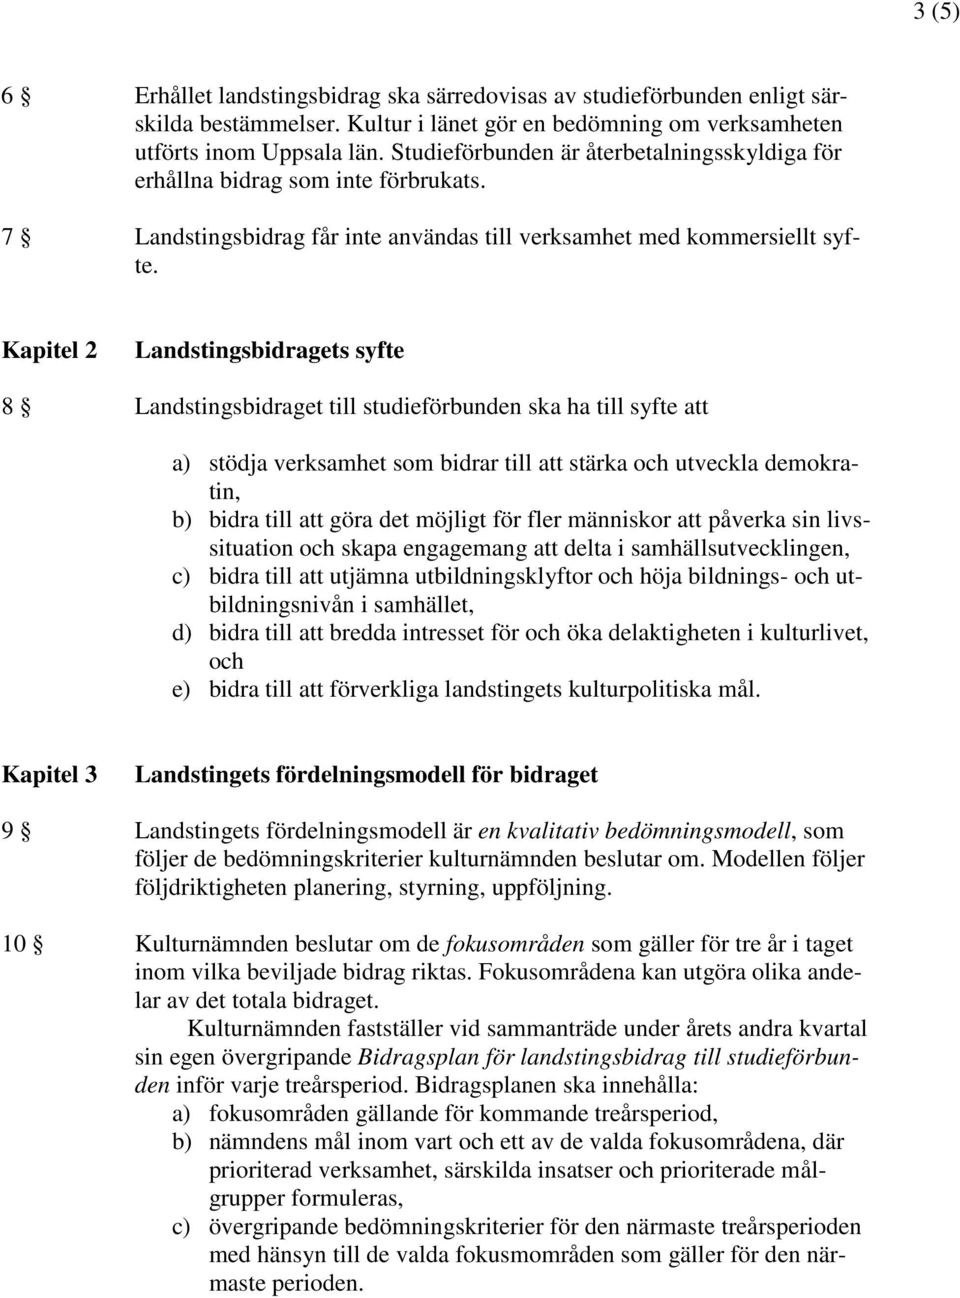 Kapitel 2 Landstingsbidragets syfte 8 Landstingsbidraget till studieförbunden ska ha till syfte att a) stödja verksamhet som bidrar till att stärka och utveckla demokratin, b) bidra till att göra det